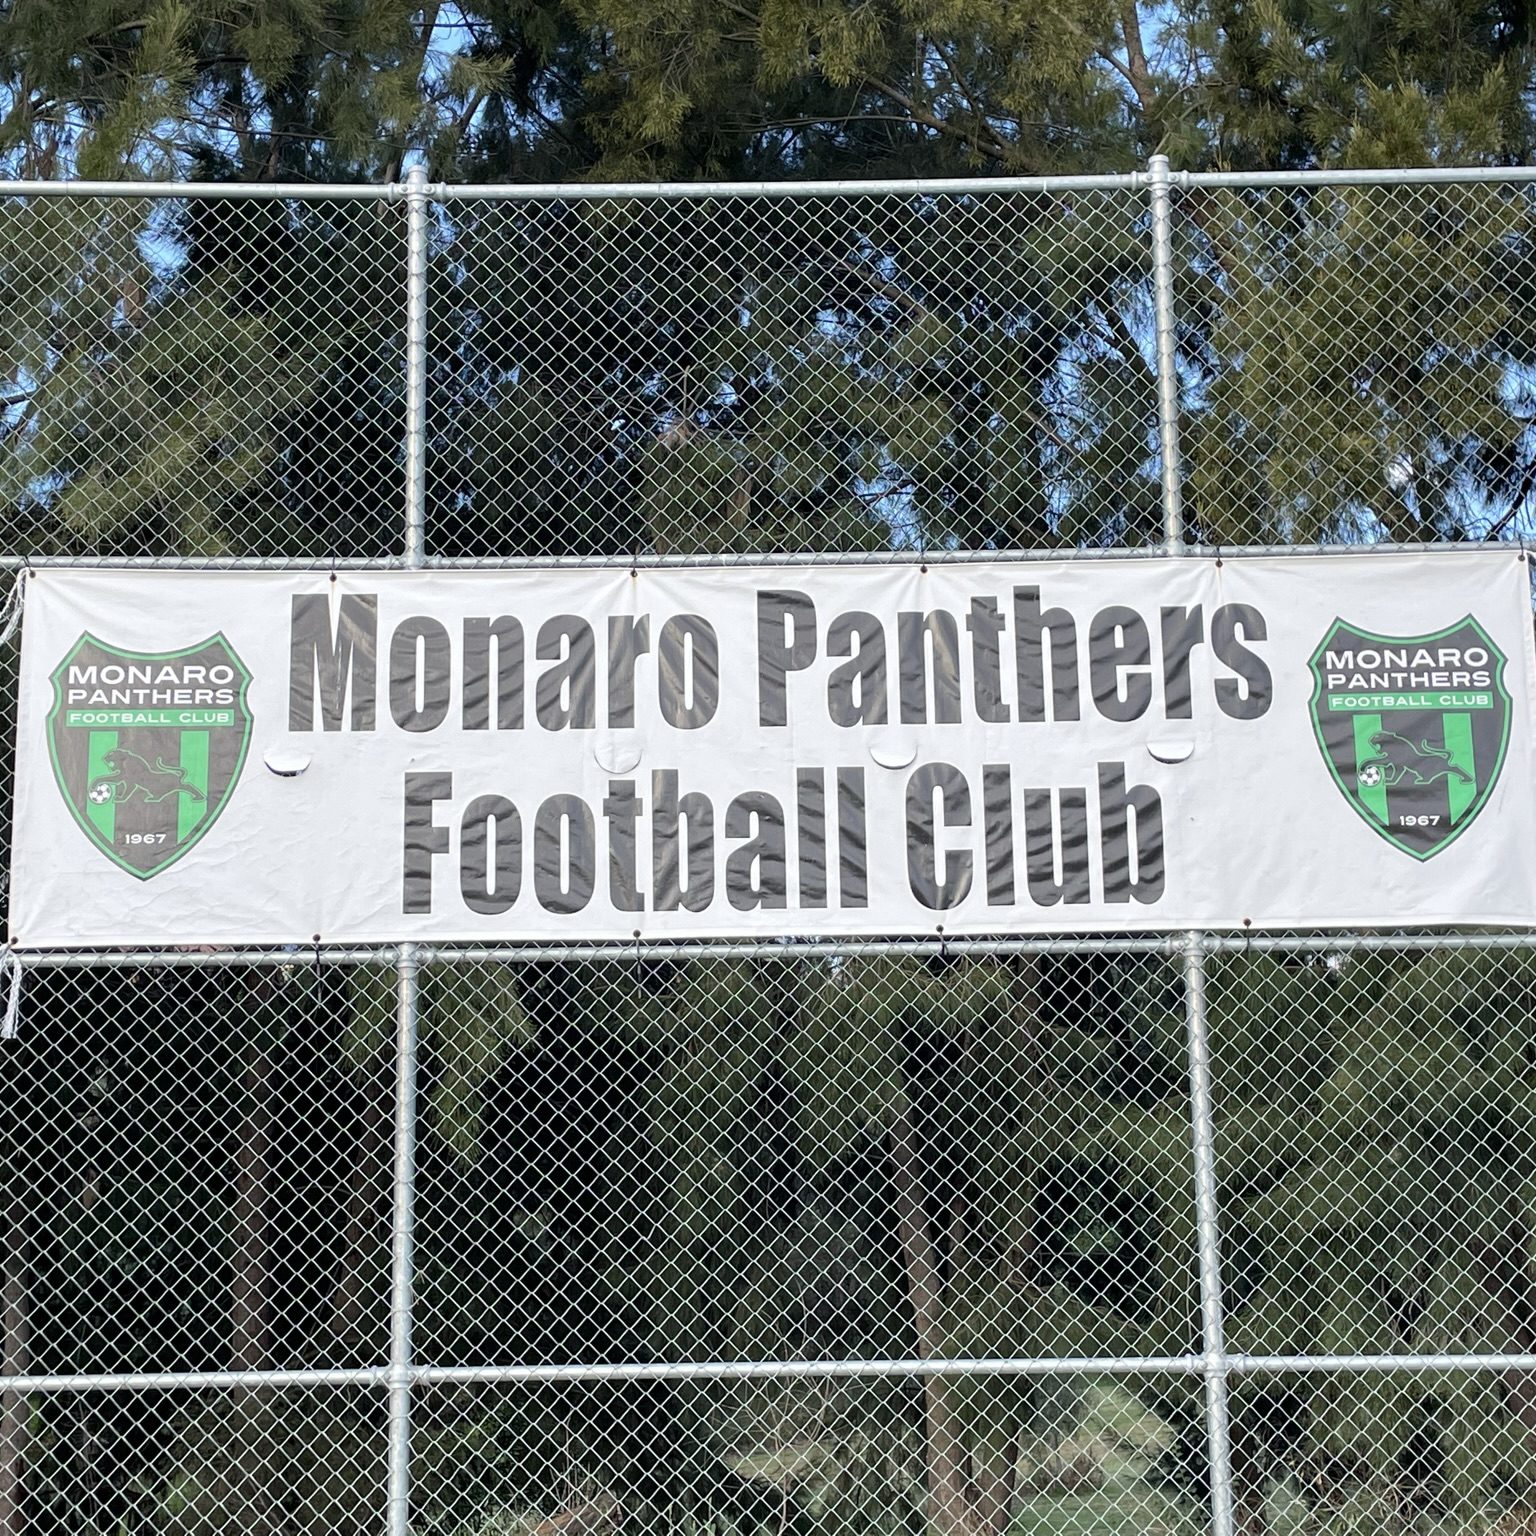 Monaro Panthers club banner hanging inside Riverside Stadium. 